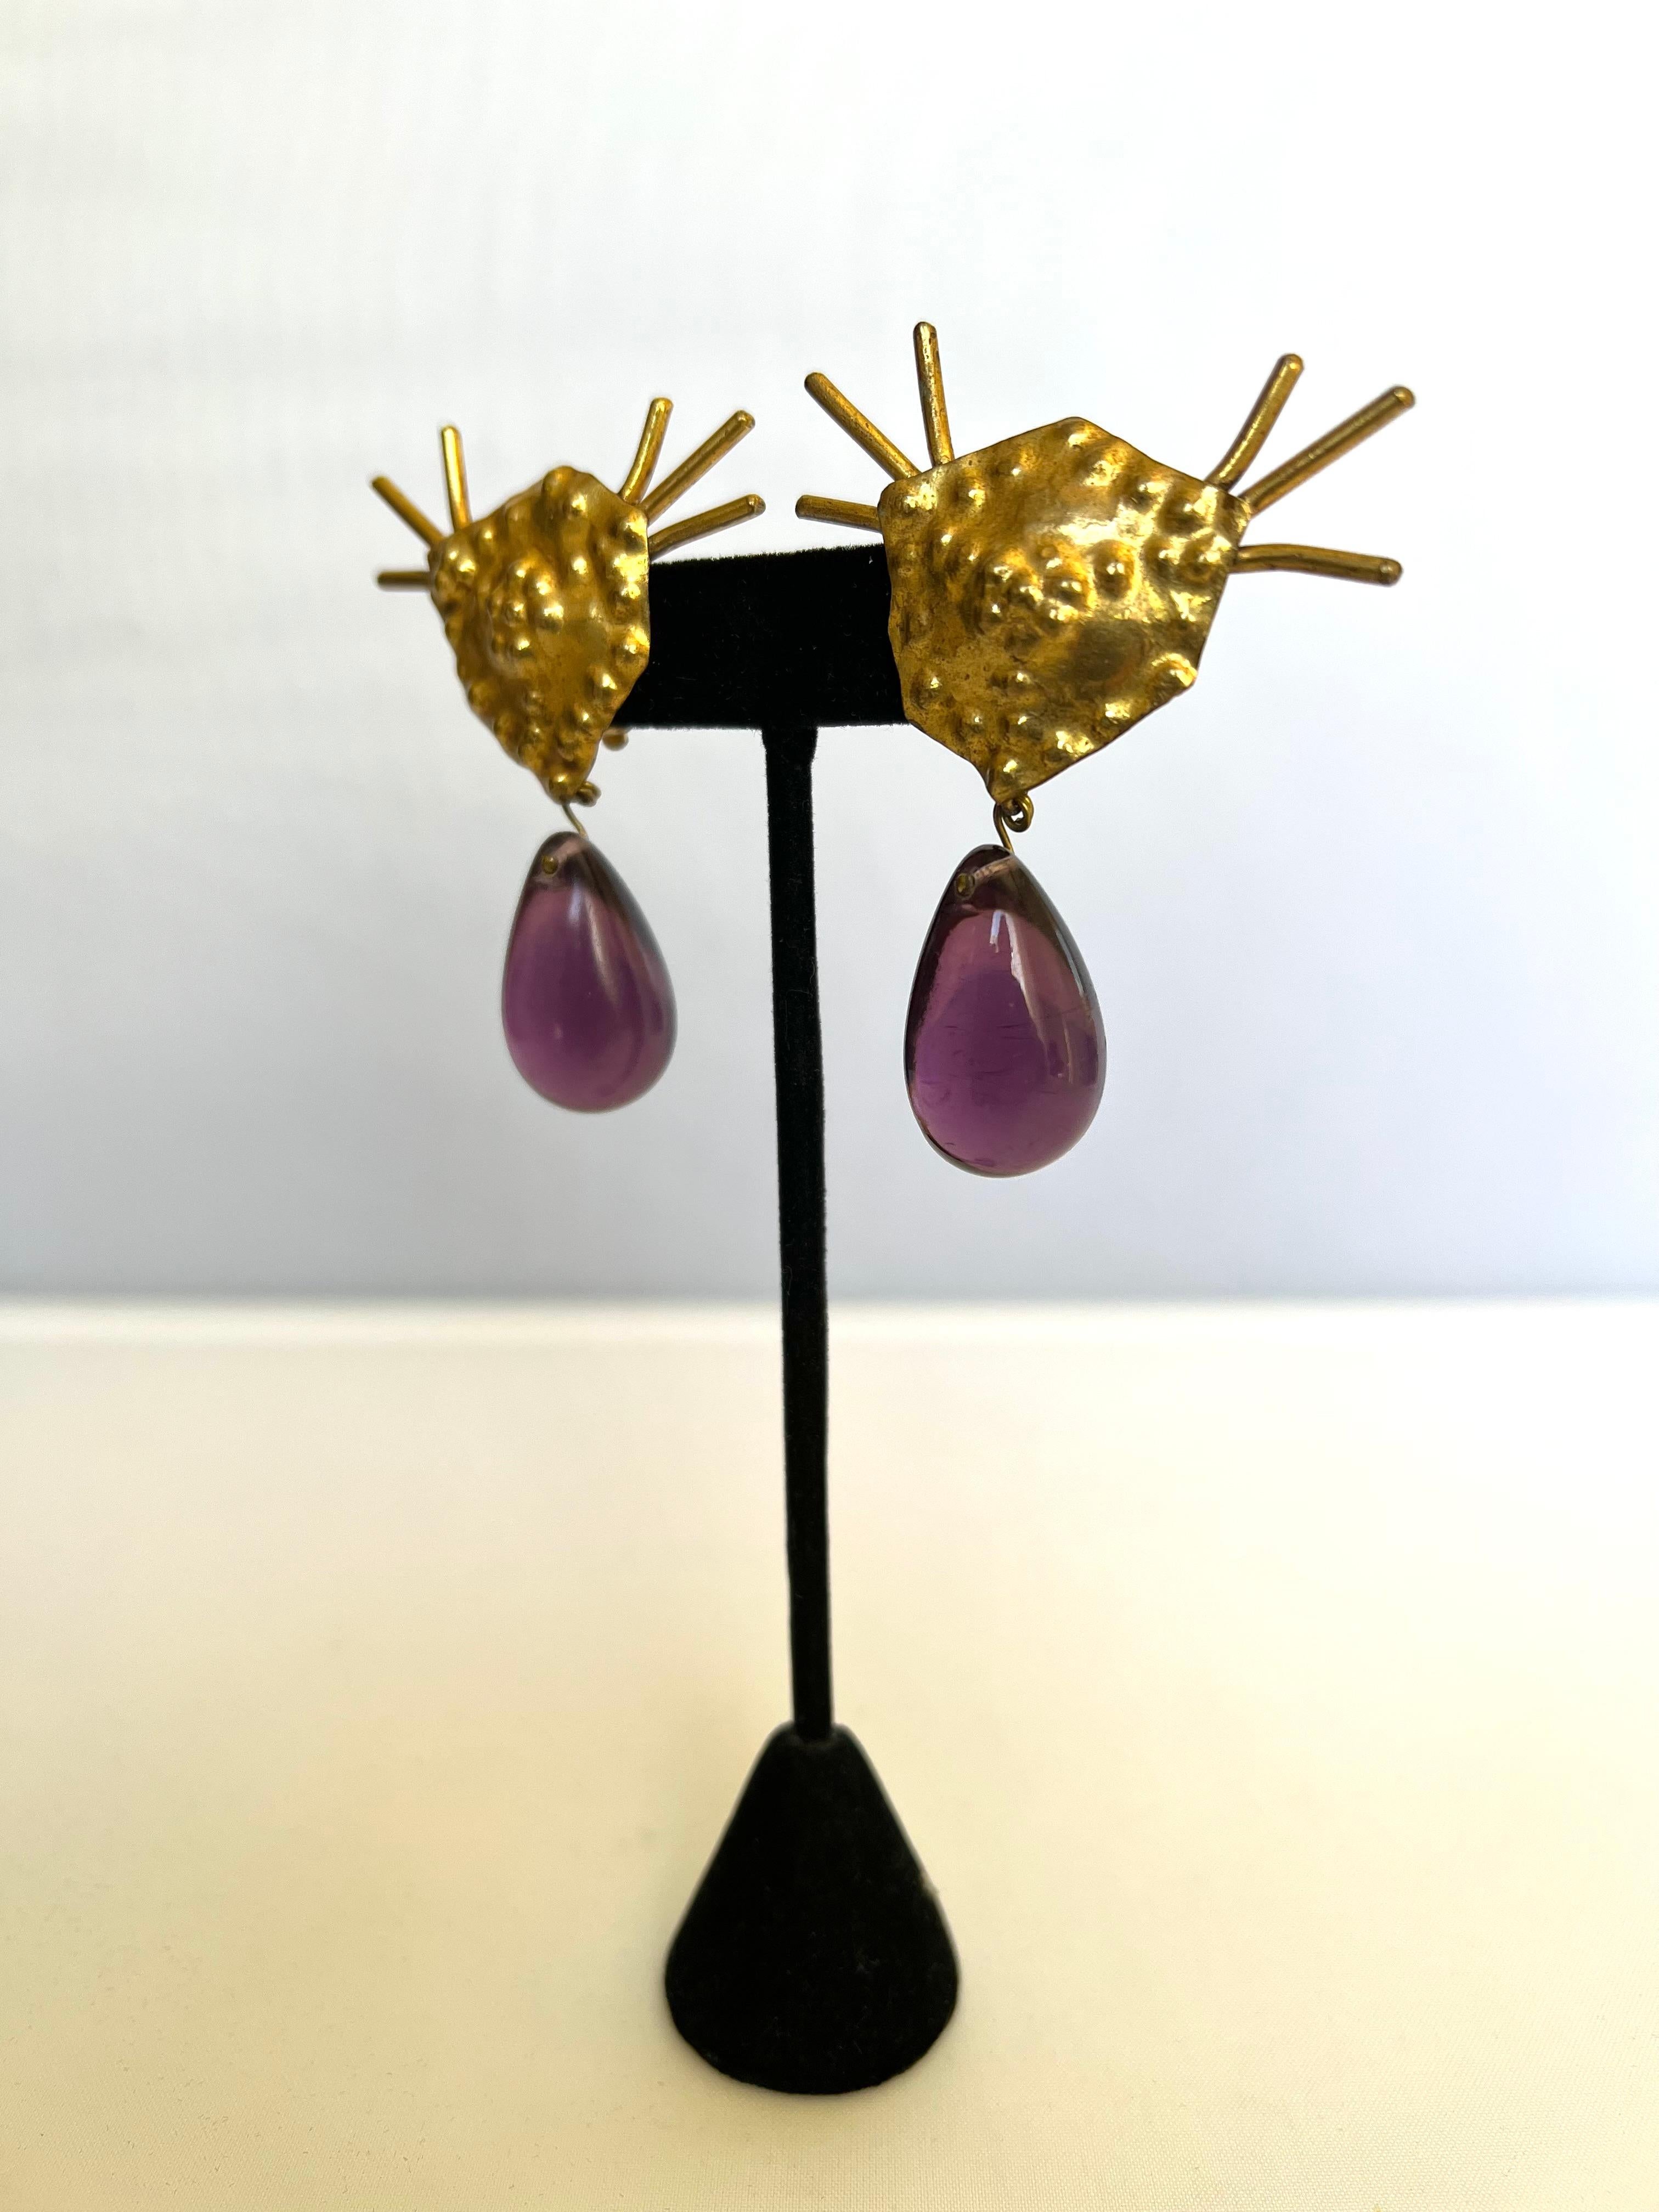 Architektonische Ohrringe aus gehämmertem, vergoldetem Metall von Herve Van Der Straeten mit lila Glastropfen, hergestellt in Frankreich um 1980/90 - signiert auf der Rückseite.